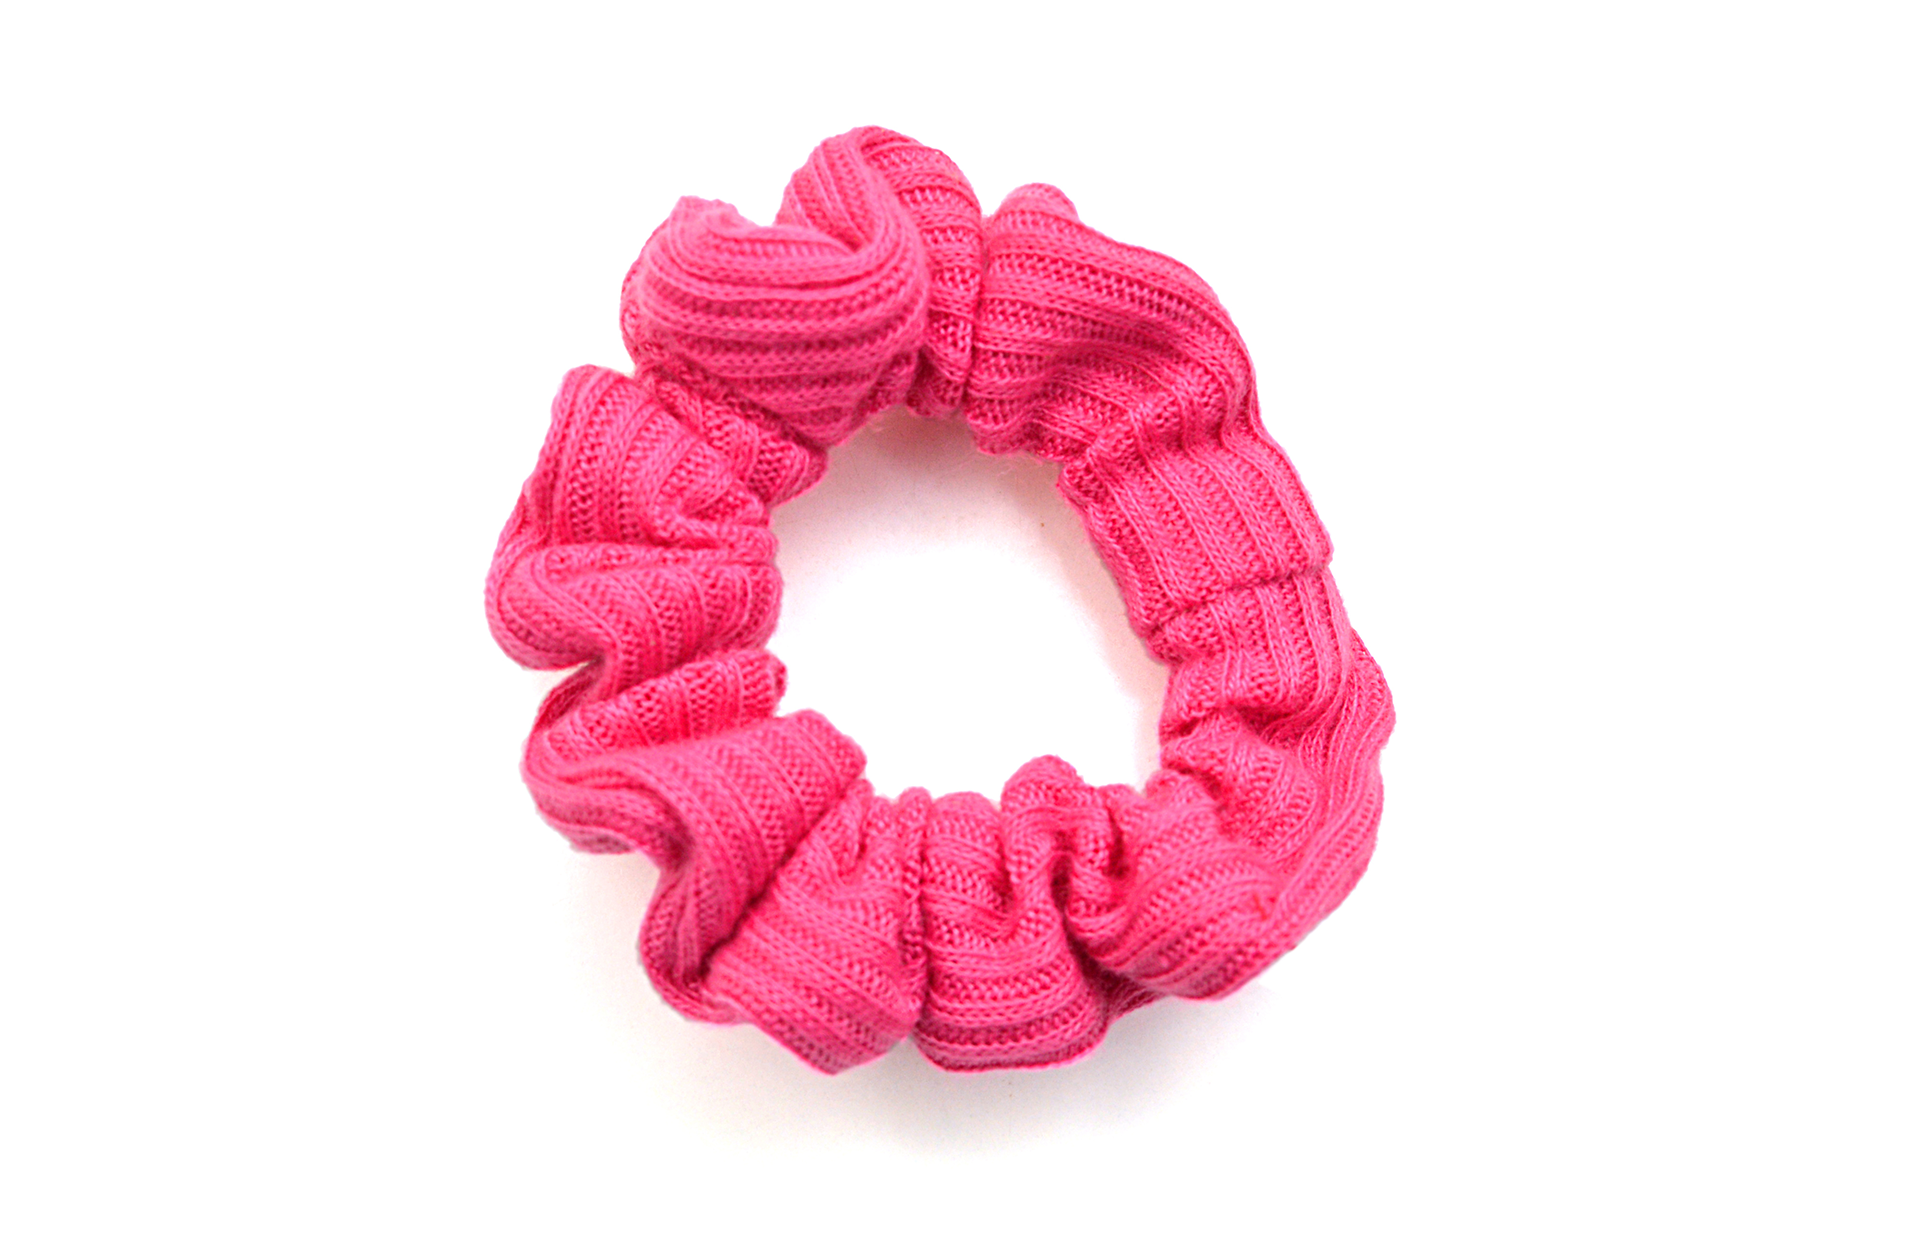 A neon pink scrunchie